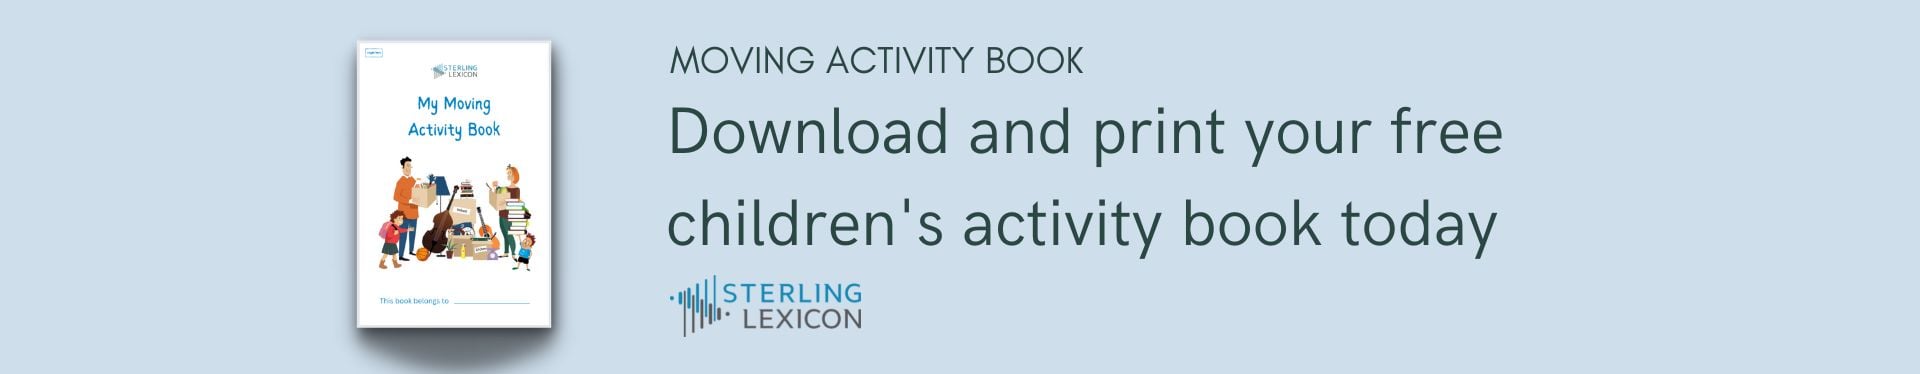 childrens-activity-book-banner